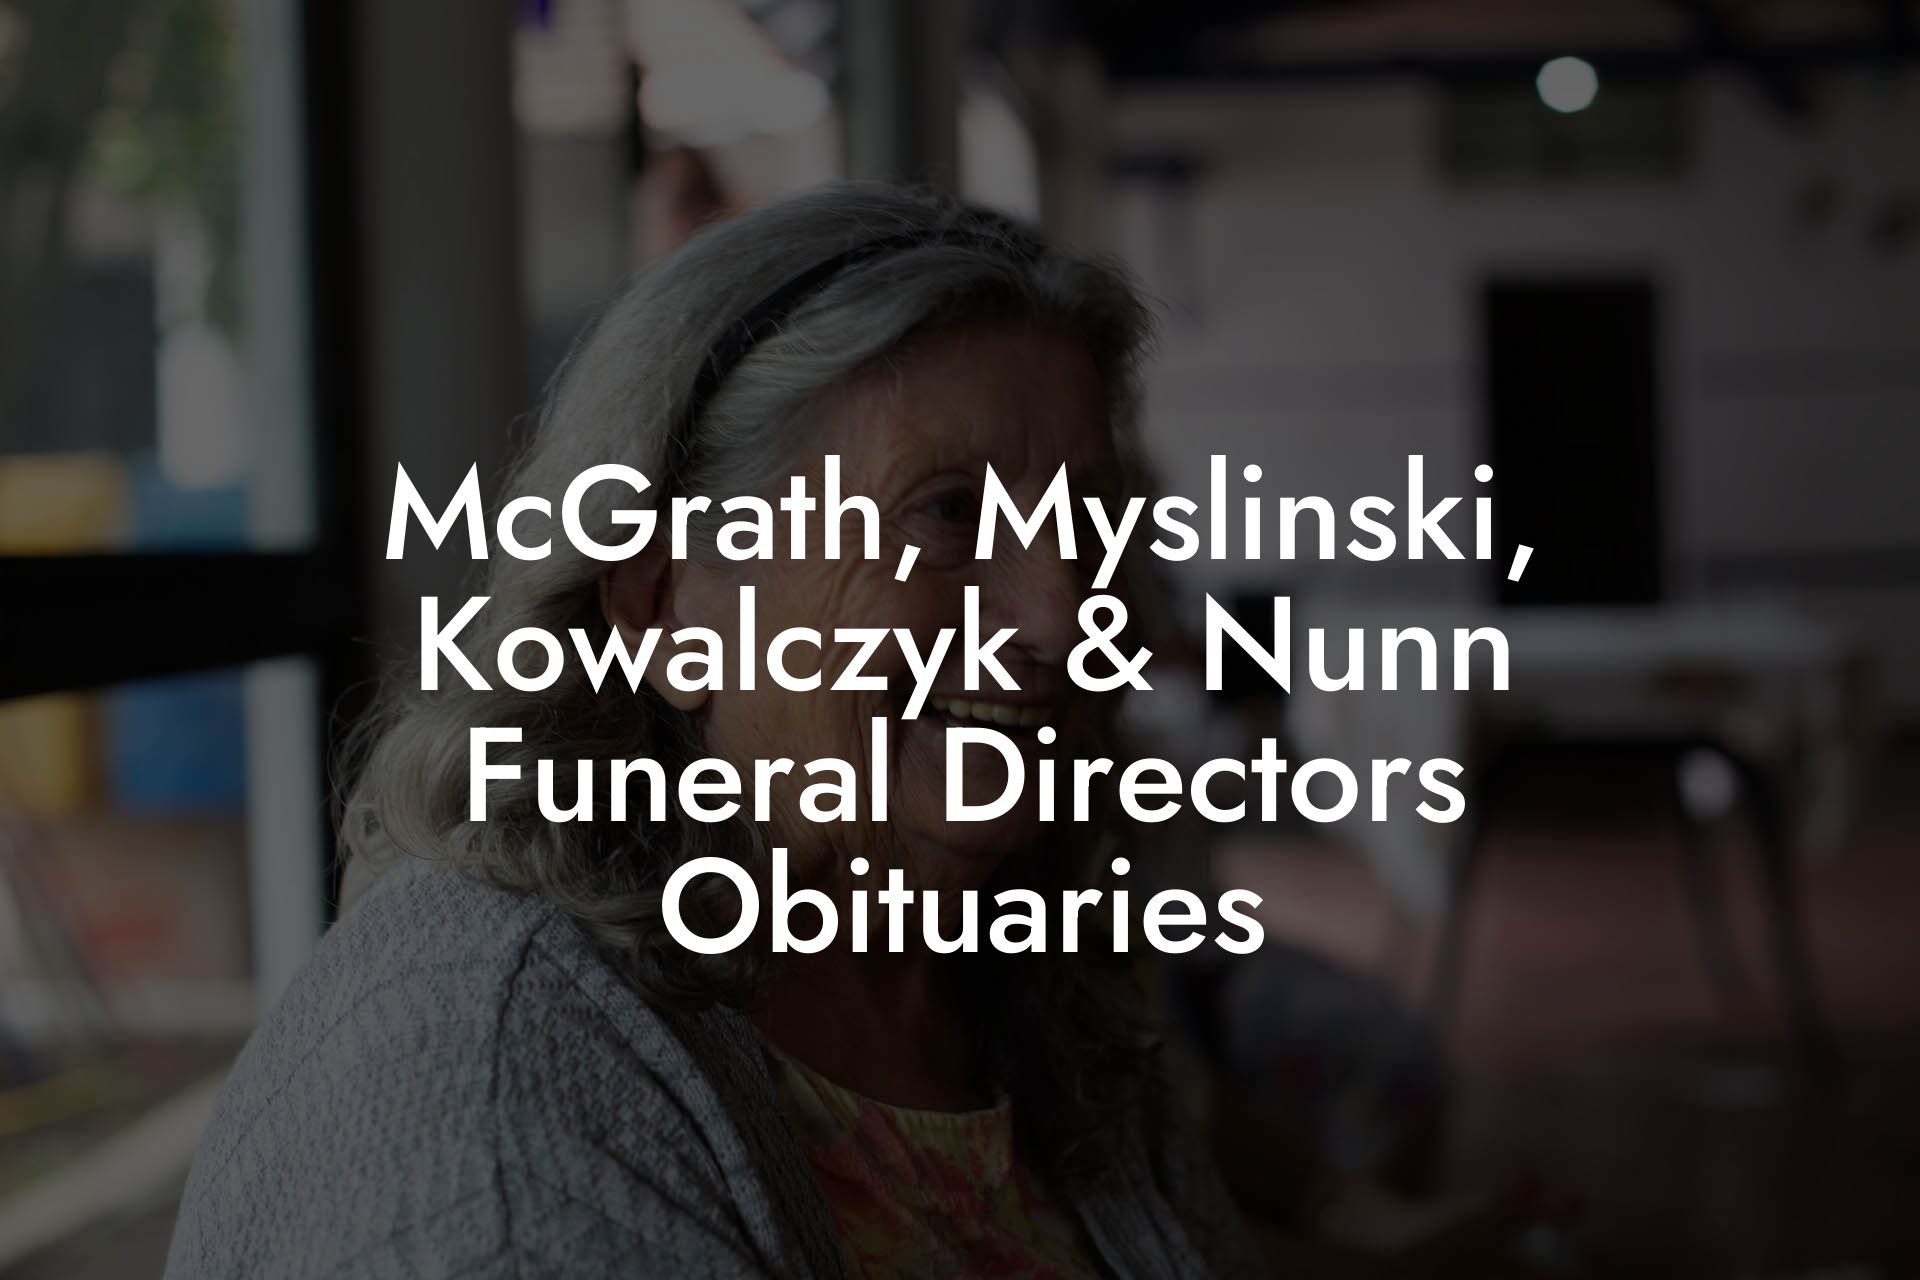 McGrath, Myslinski, Kowalczyk & Nunn Funeral Directors Obituaries